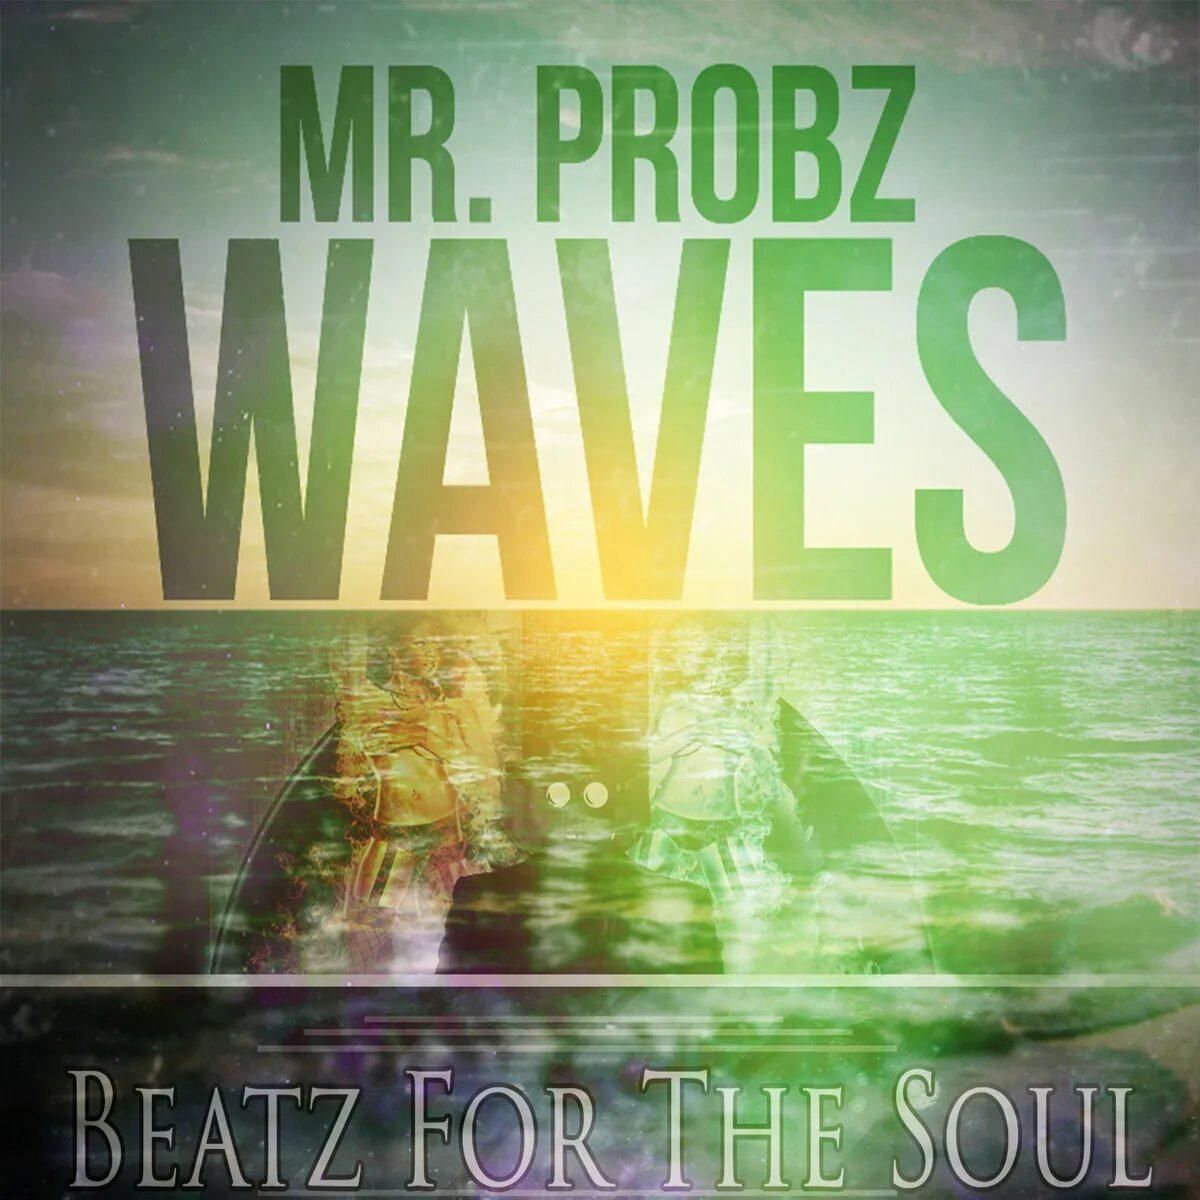 Mr probz. Mr Probz Waves. Waves Robin Schulz. Mr Probz Waves Robin Schulz. Mr Probz Waves Robin Schulz Remix.